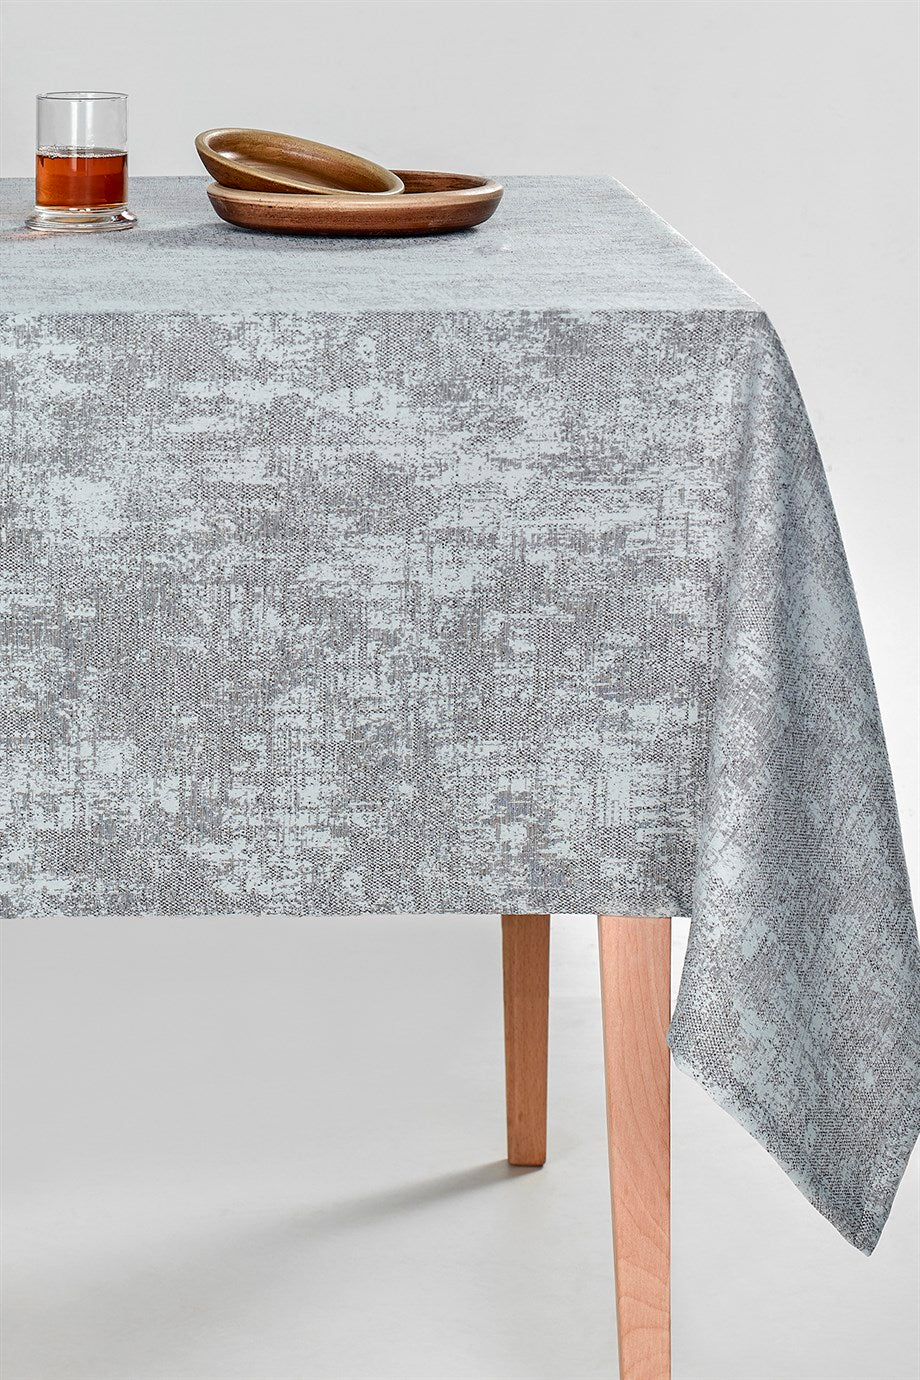 DENIZLI CONCEPT Milano Tablecloth Gray